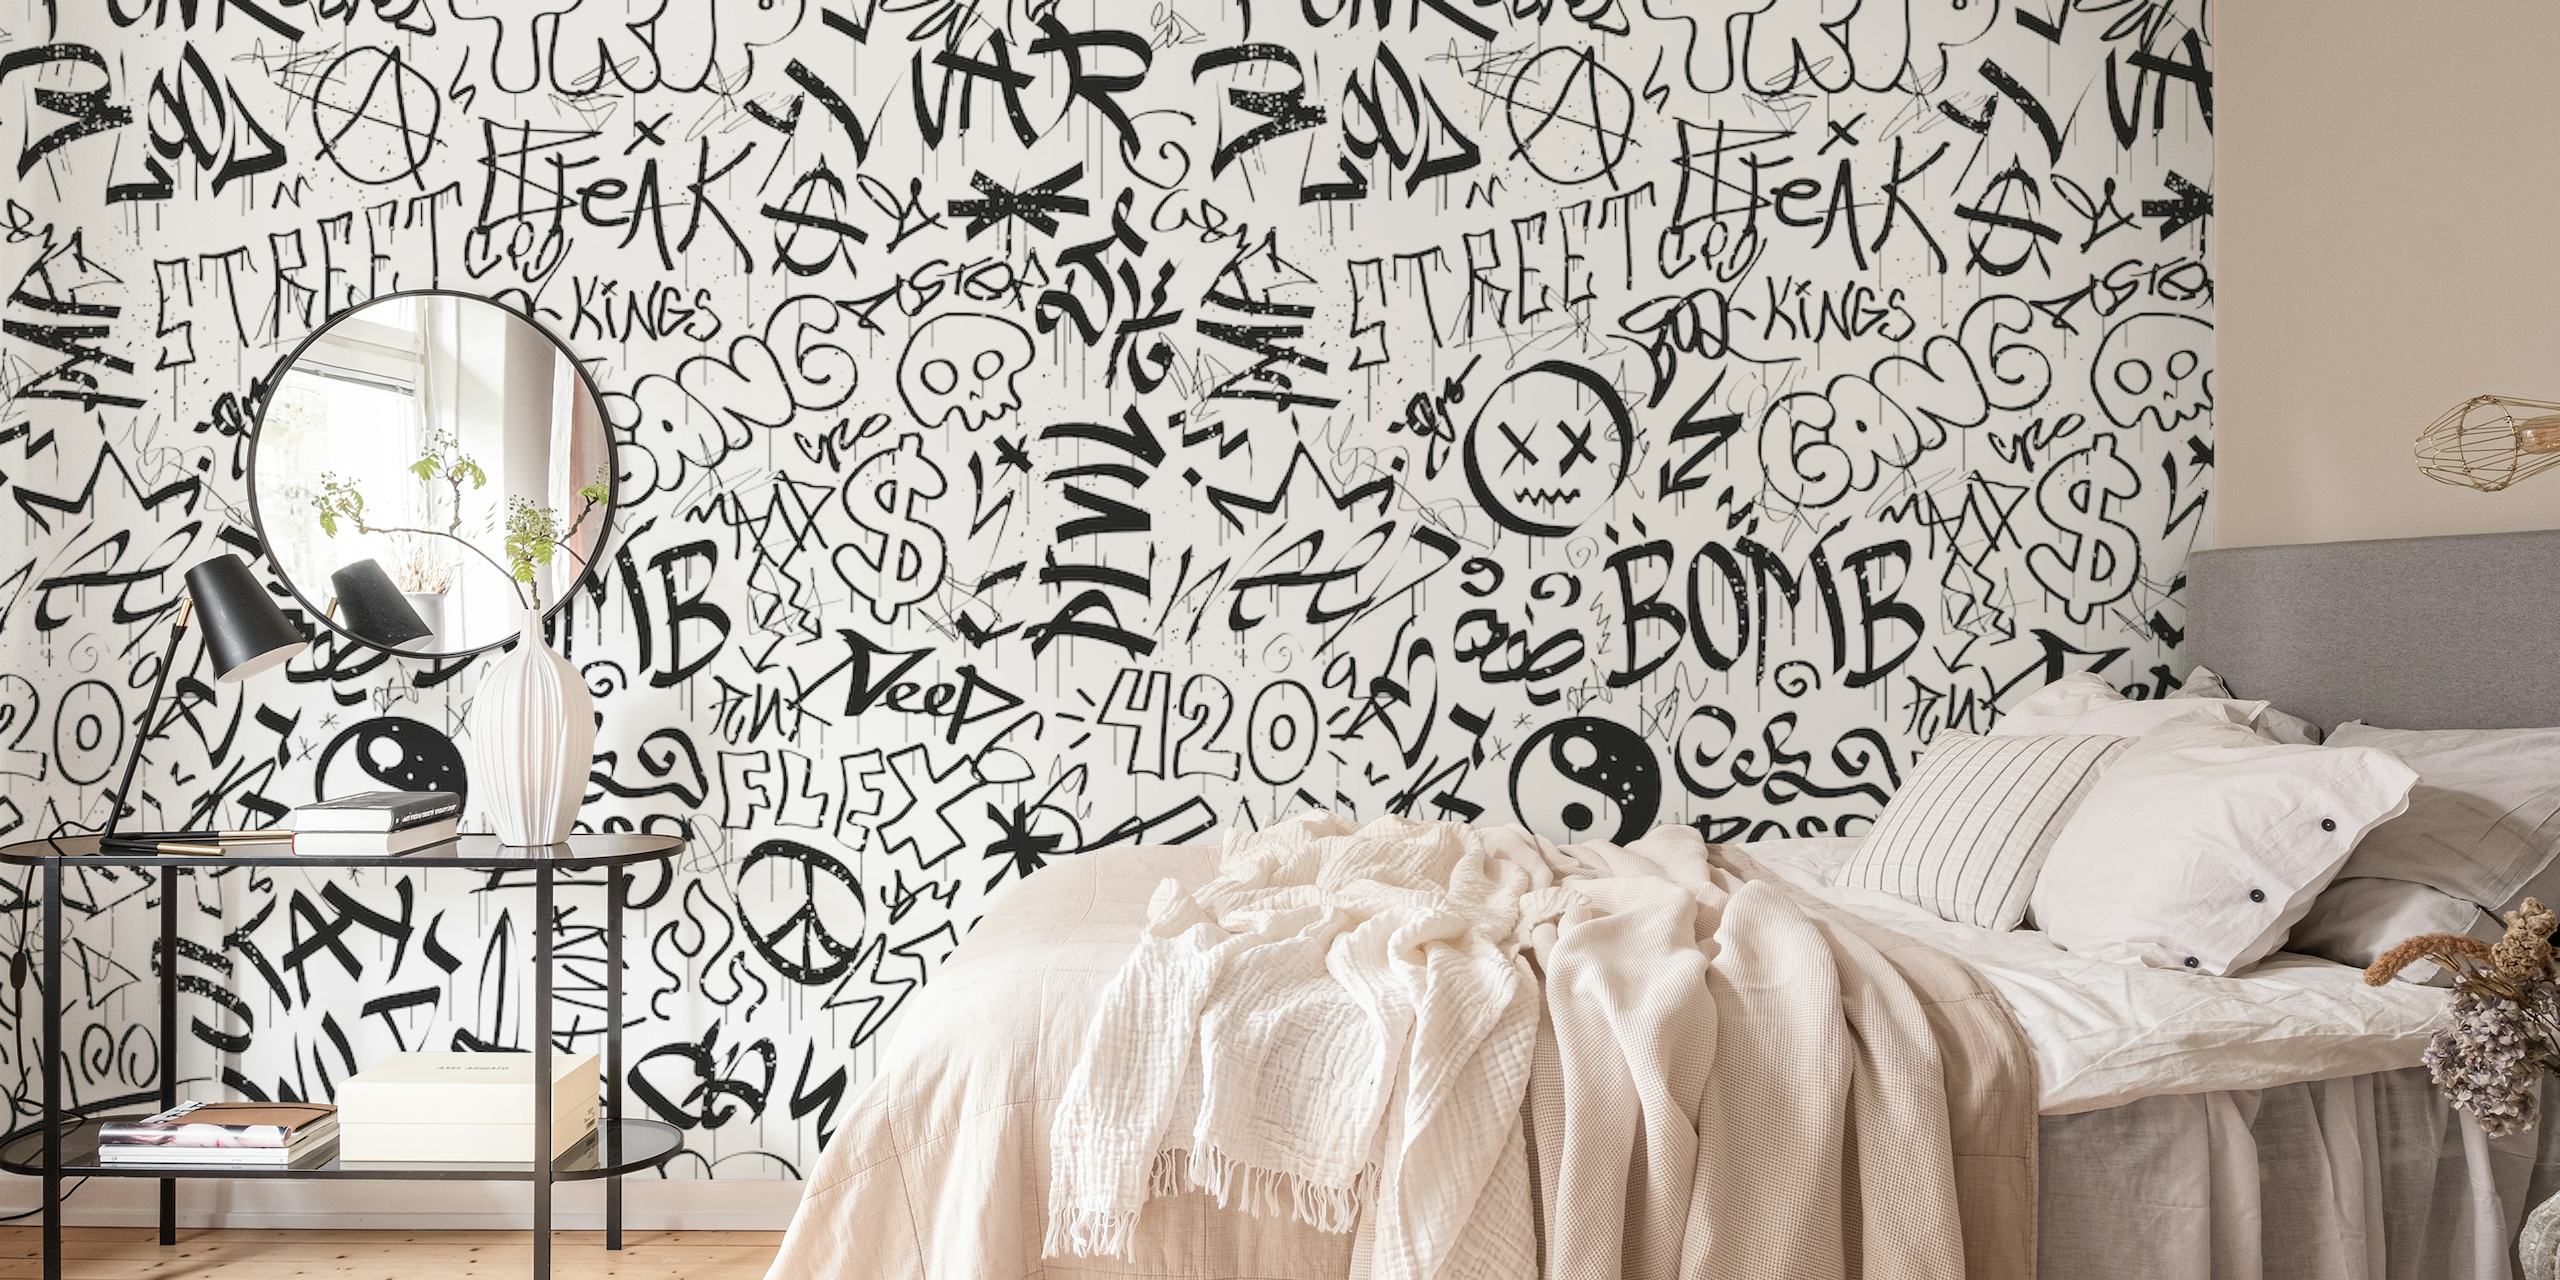 Svart-hvitt veggmaleri i graffitistil med forskjellige tagger og karakterer.